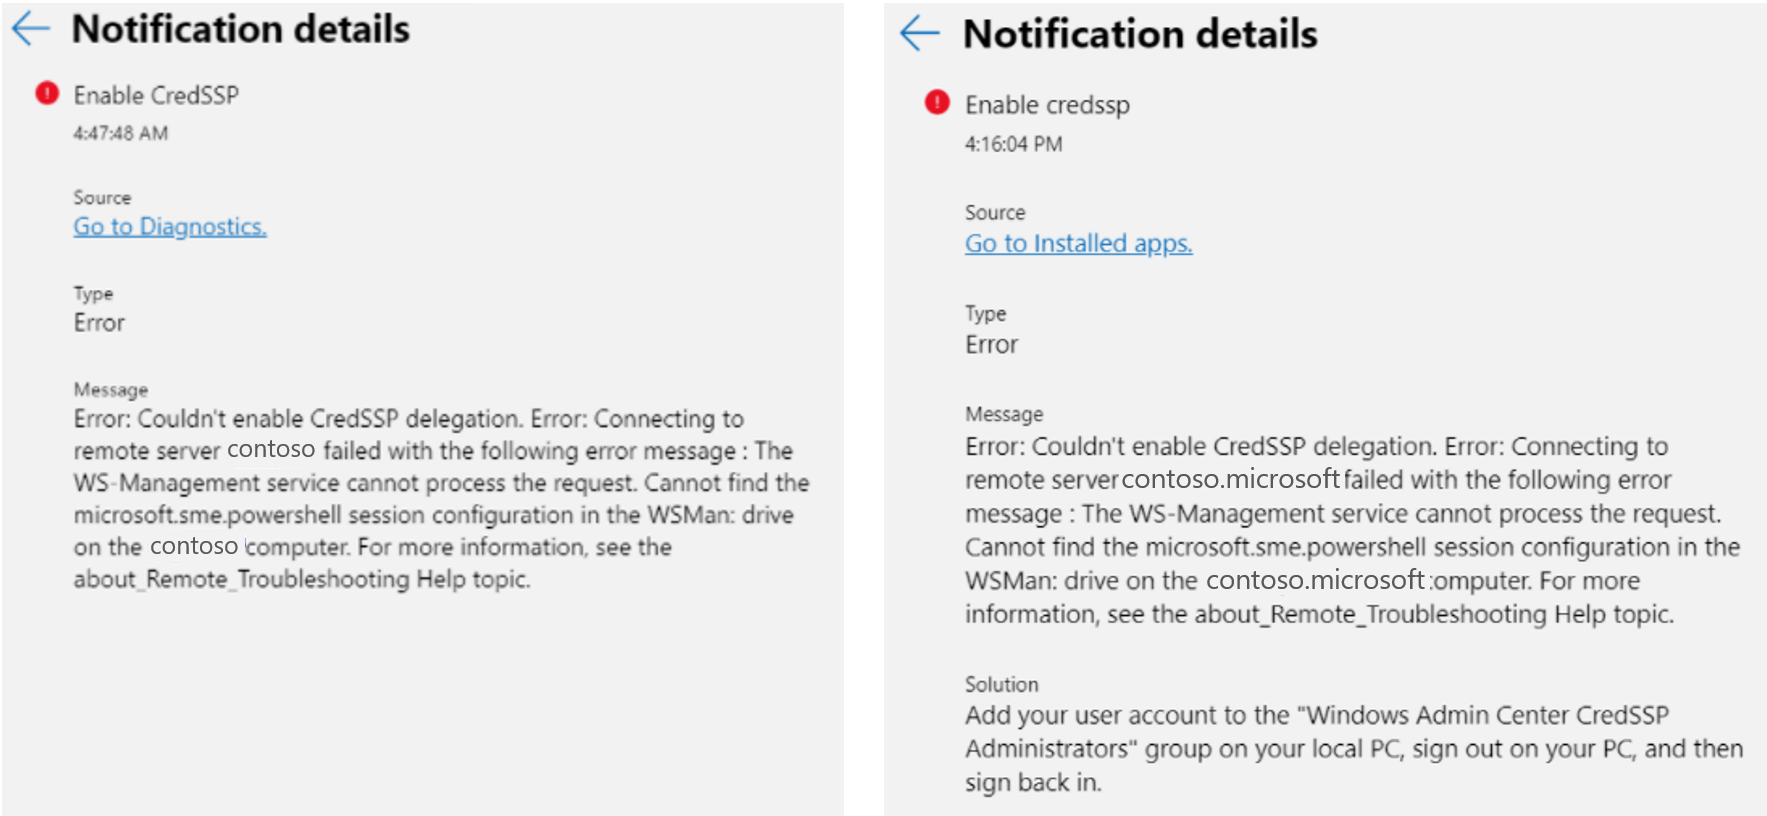 Una comparación en paralelo de la notificación de error de permisos de punto de conexión para Cred S S P en Windows Admin Center.